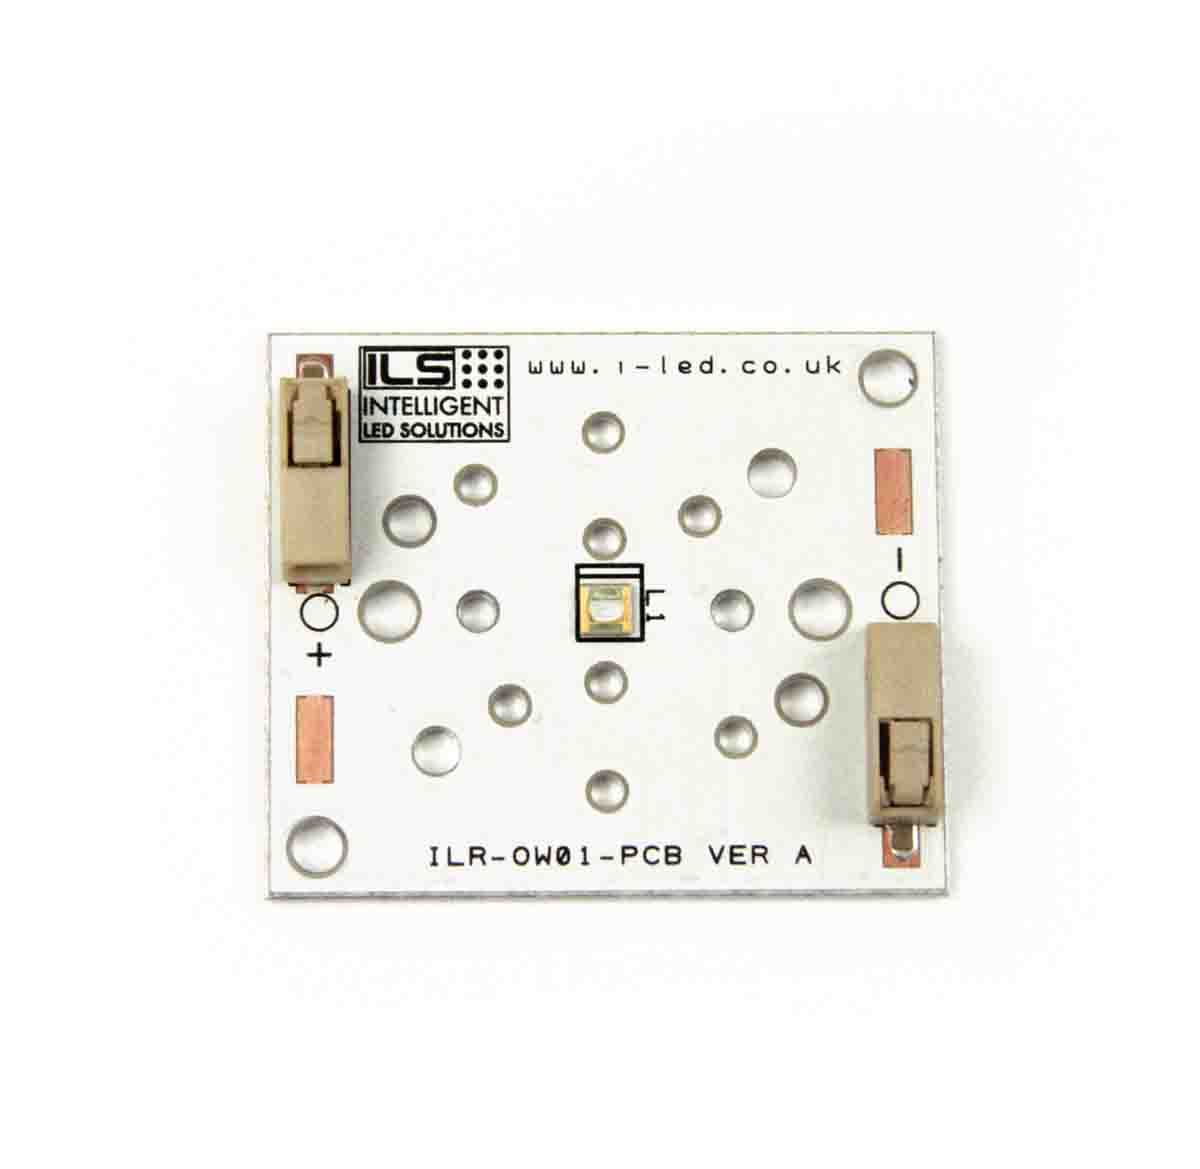 ILR-LP01-S270-LEDIL-SC201. Intelligent LED Solutions, UV LED